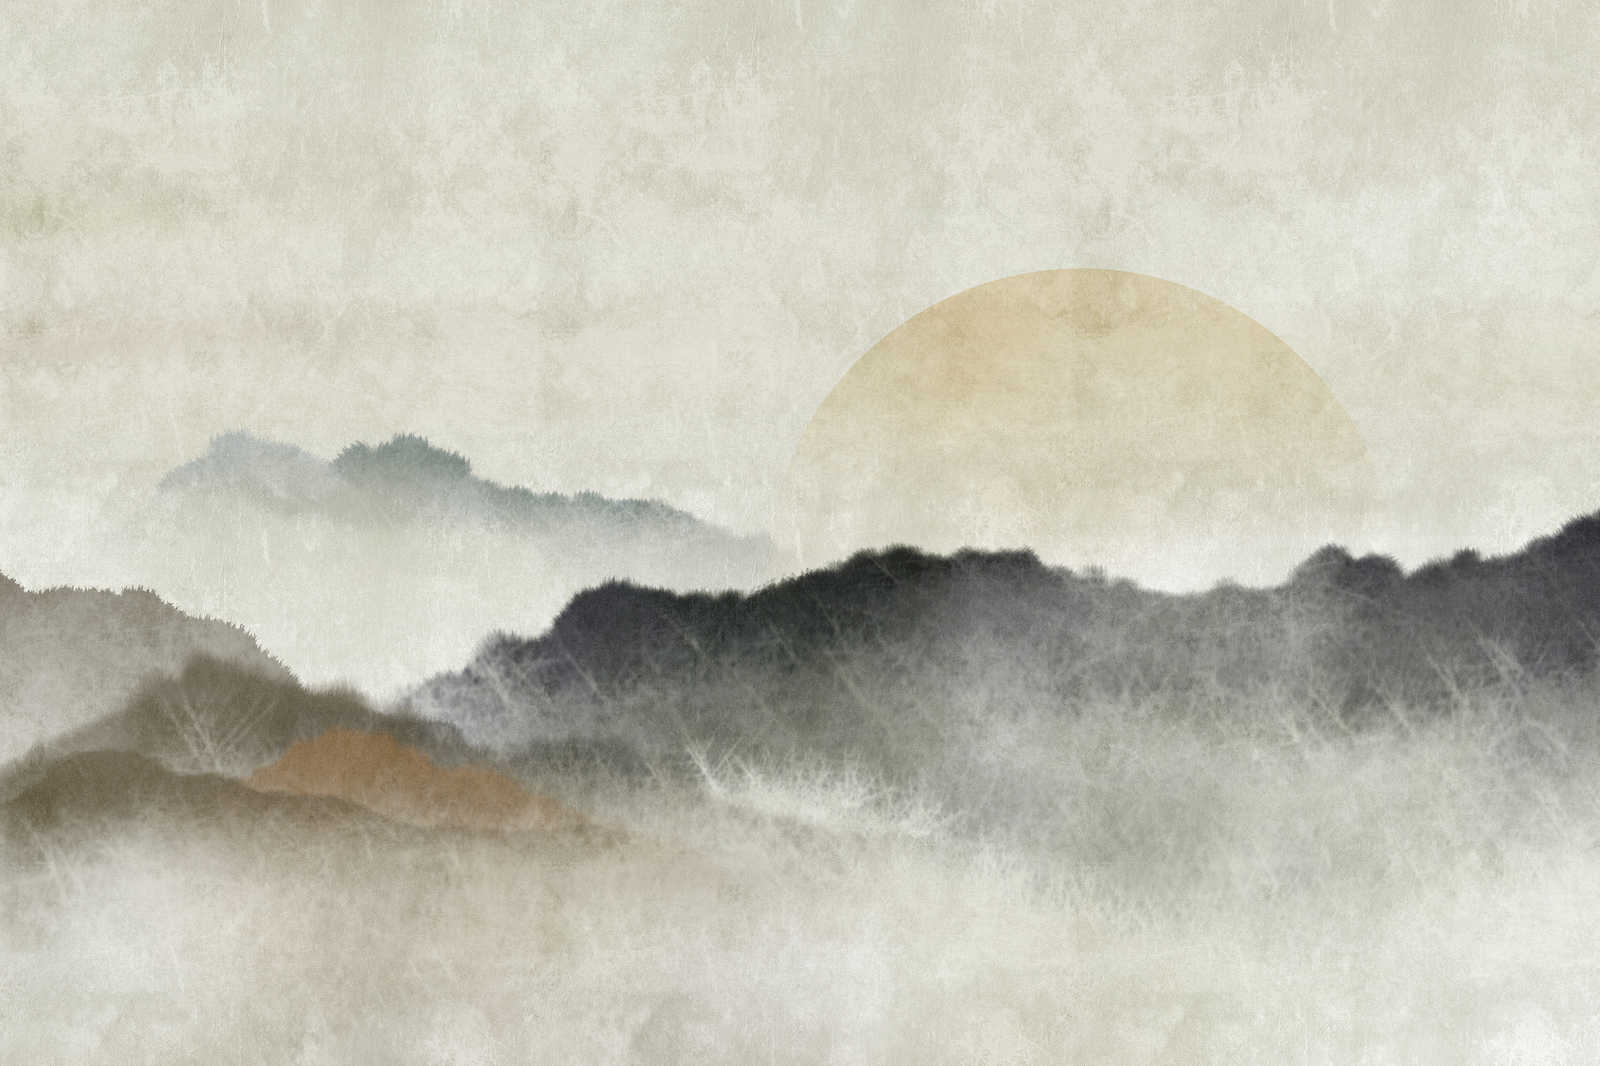             Akaishi 1 - Toile Asian Print Chaîne de montagnes à l'aube - 1,20 m x 0,80 m
        